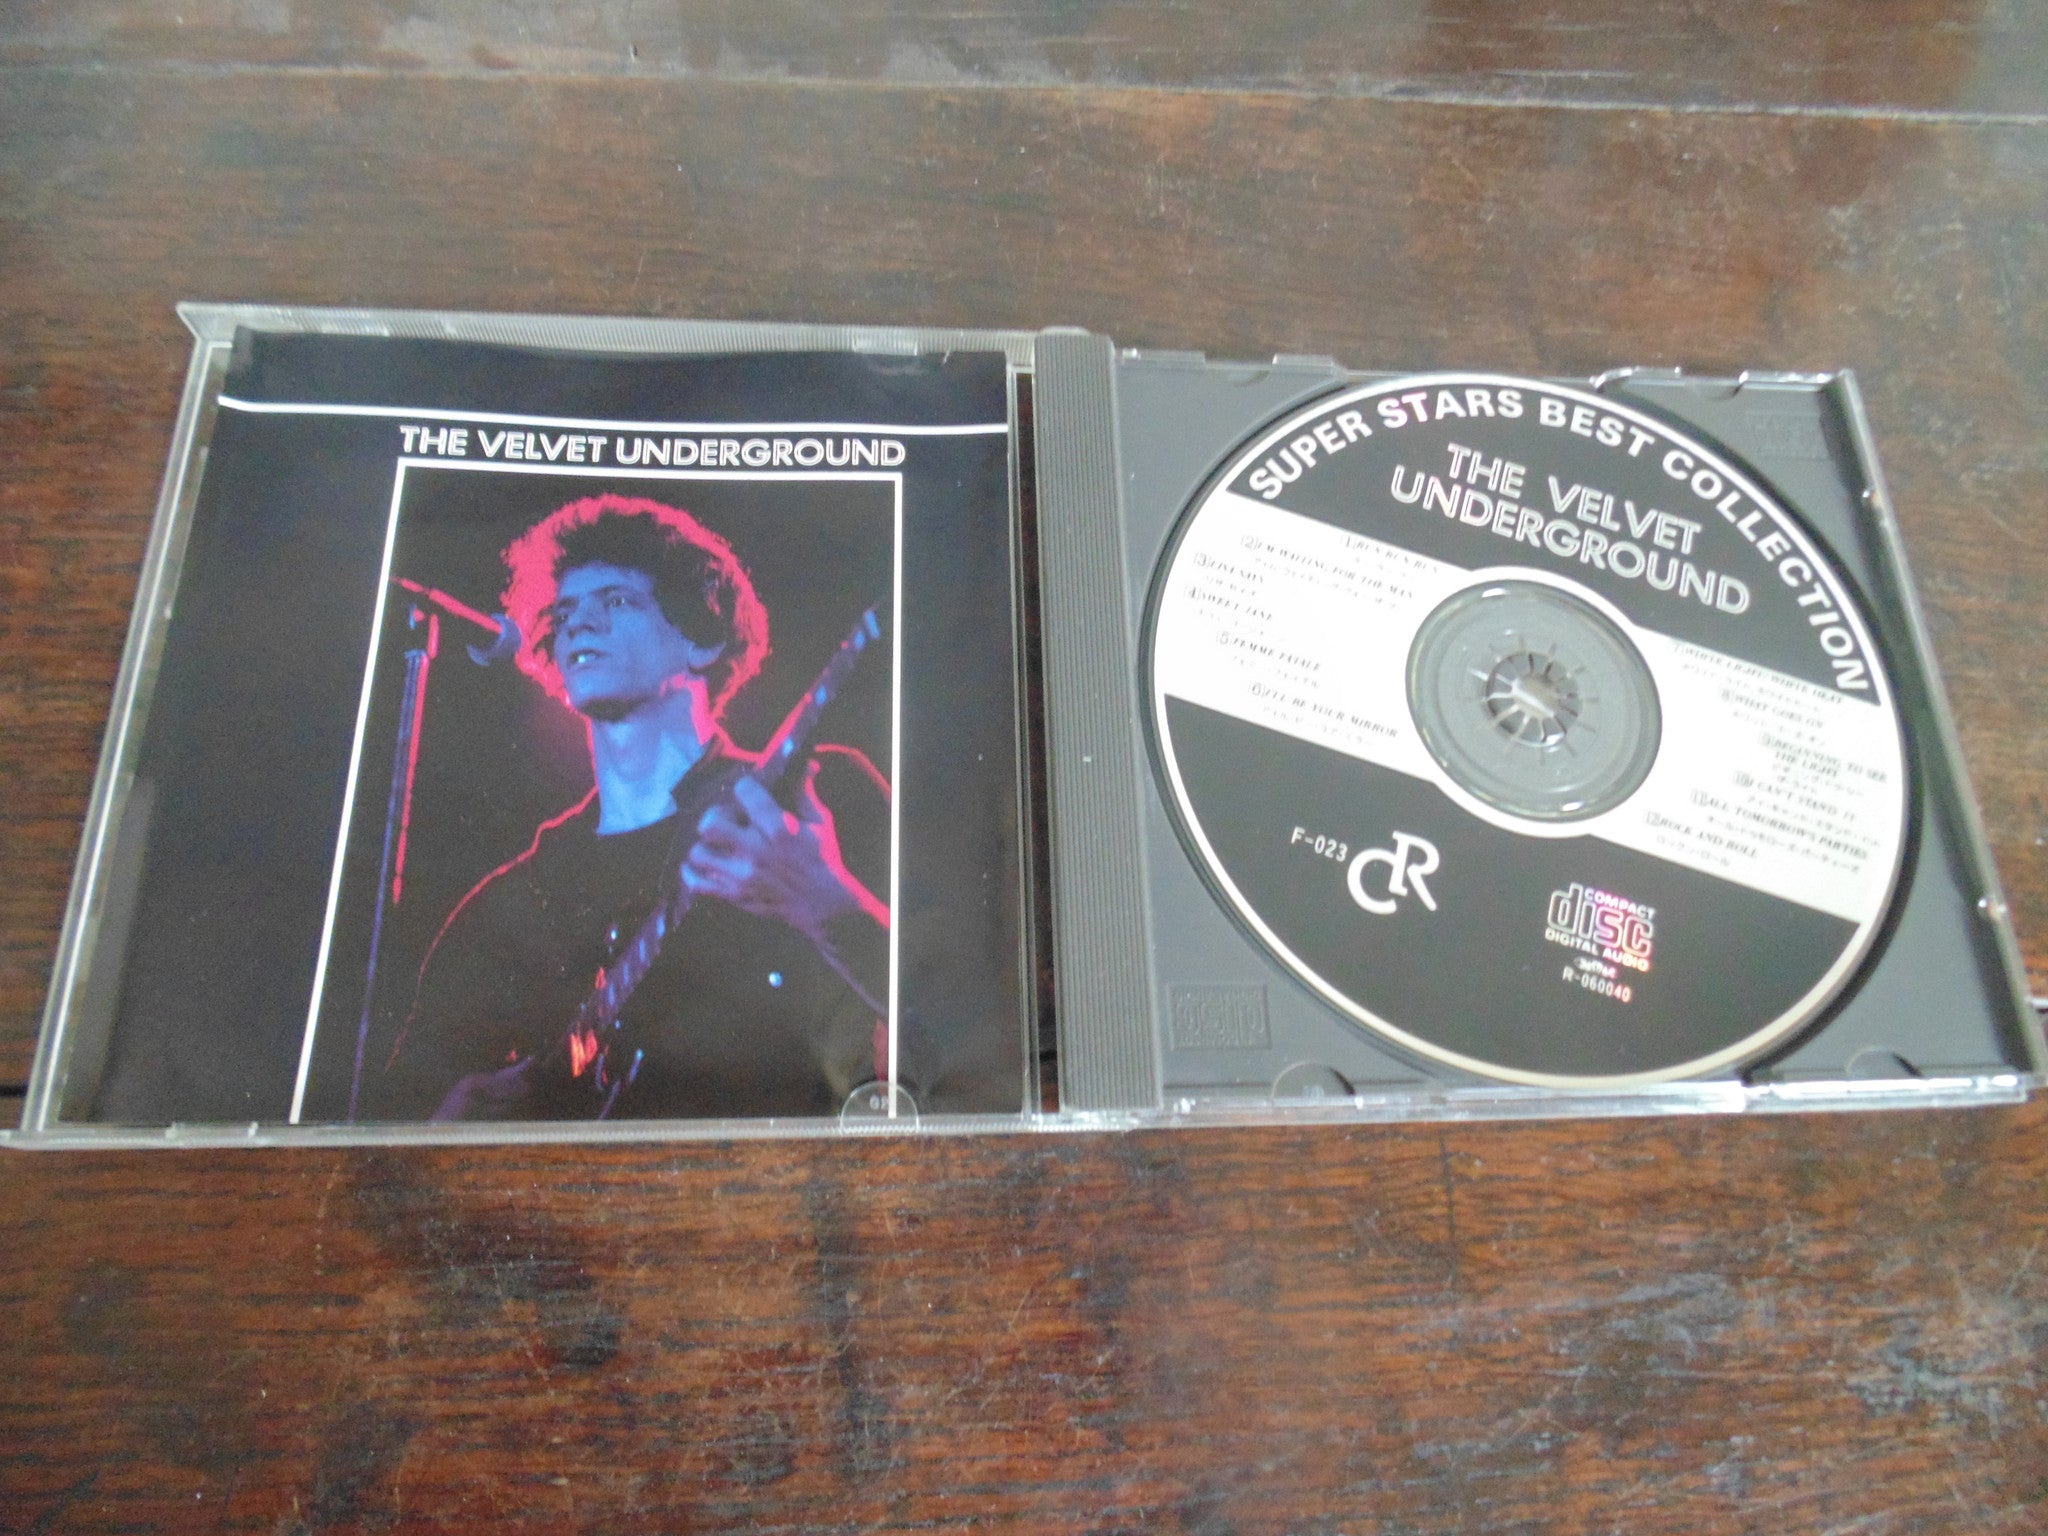 The Velvet Underground CD, Lou Reed, Japanese Import, Super Stars, Bes –  Fibits